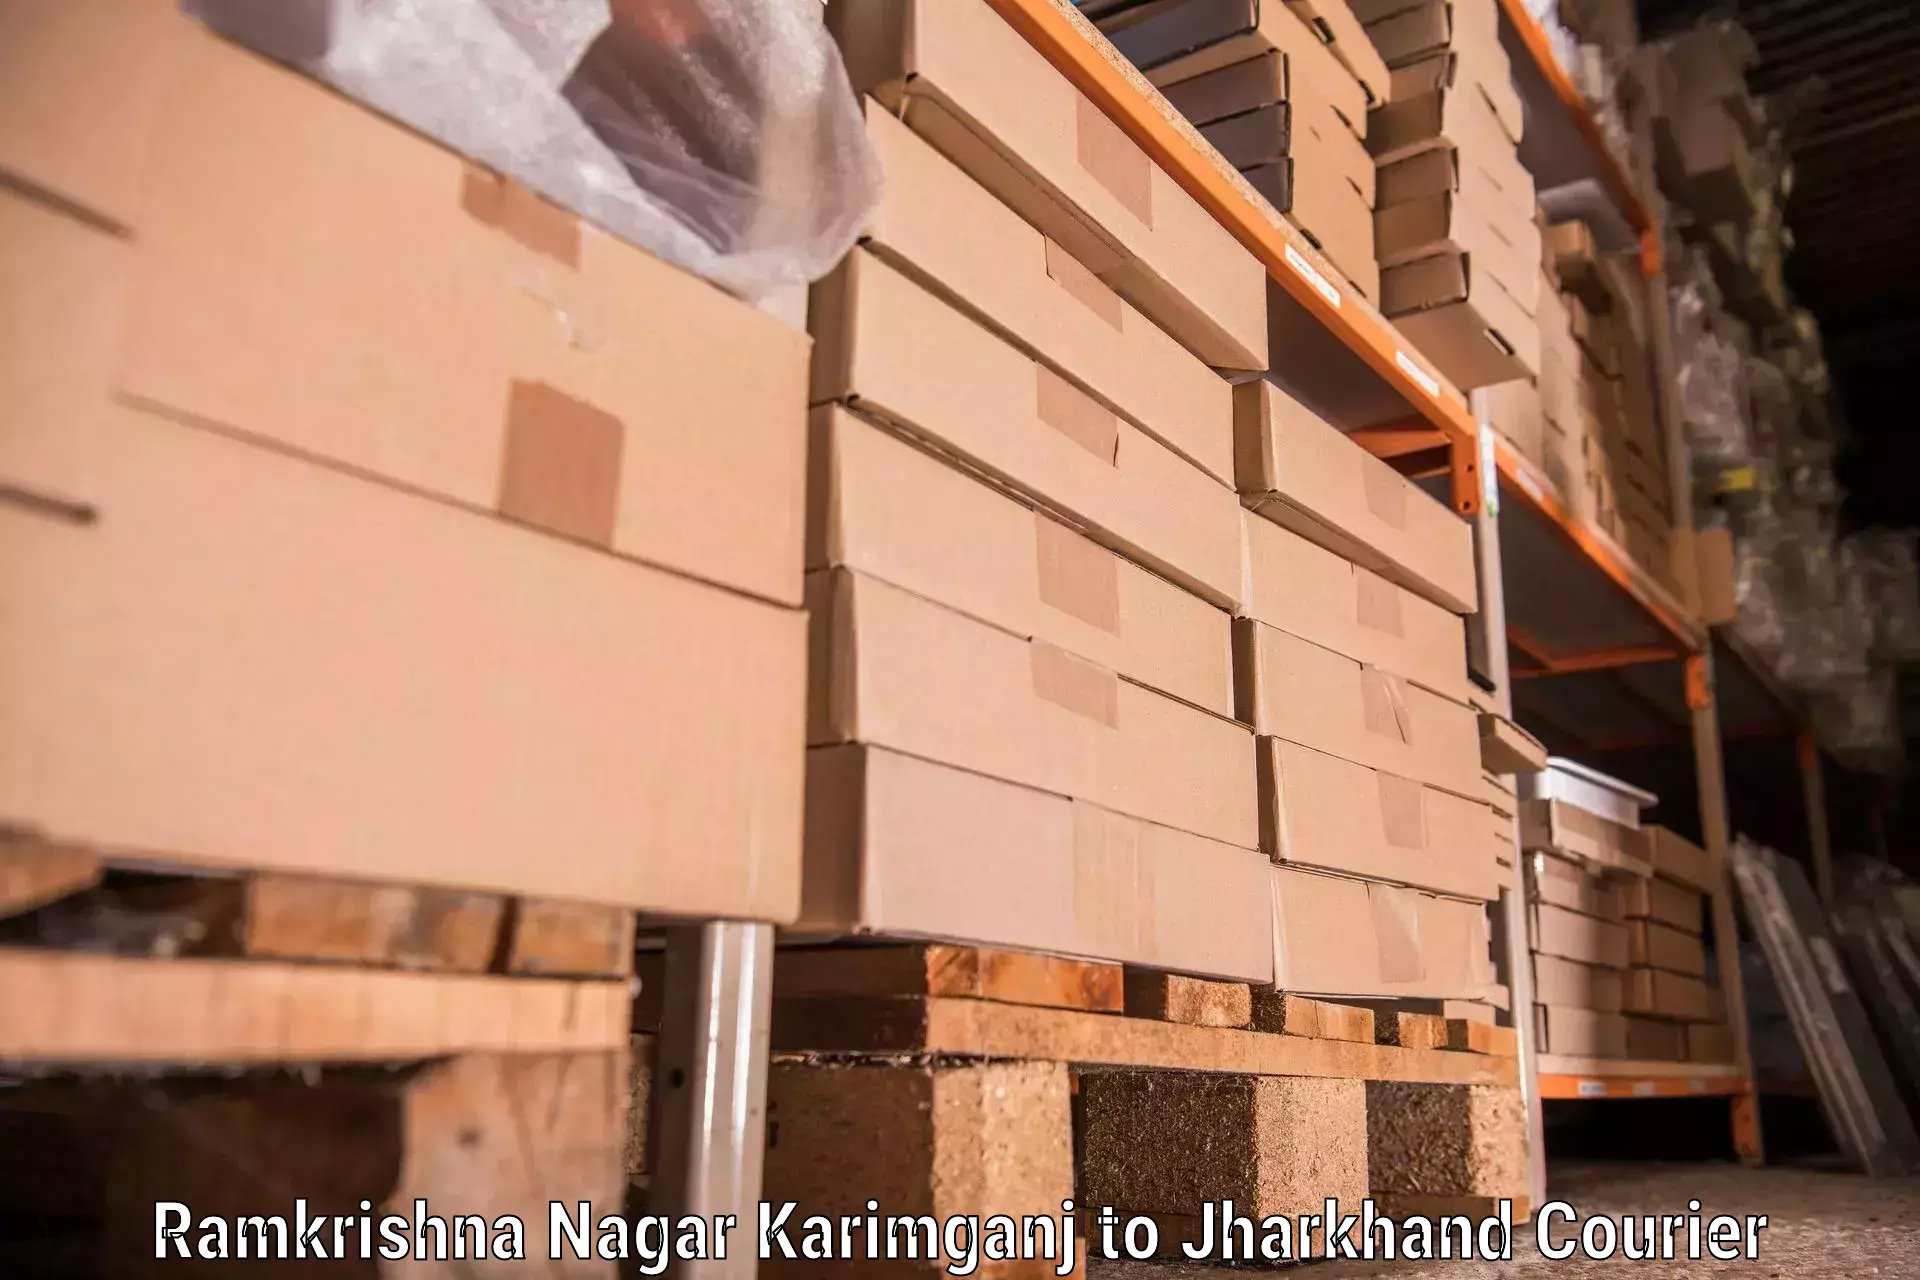 Furniture transport specialists Ramkrishna Nagar Karimganj to Dhalbhumgarh